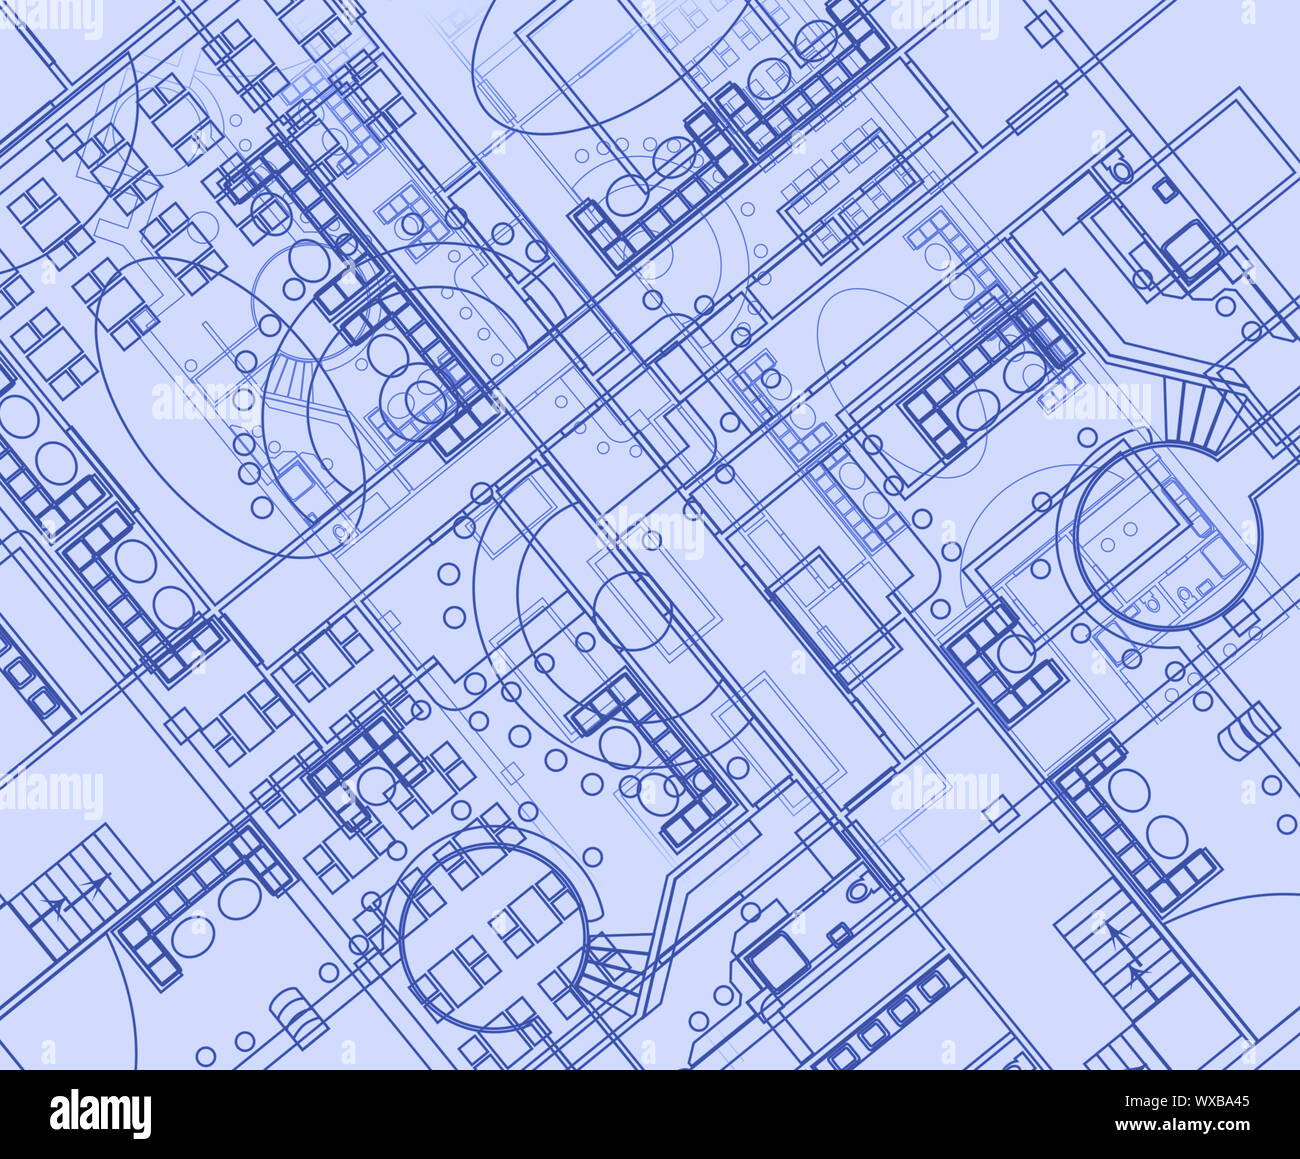 Antecedentes arquitectónicos con dibujos técnicos. Plan Blueprints de textura. Parte de dibujo del proyecto arquitectónico. Foto de stock